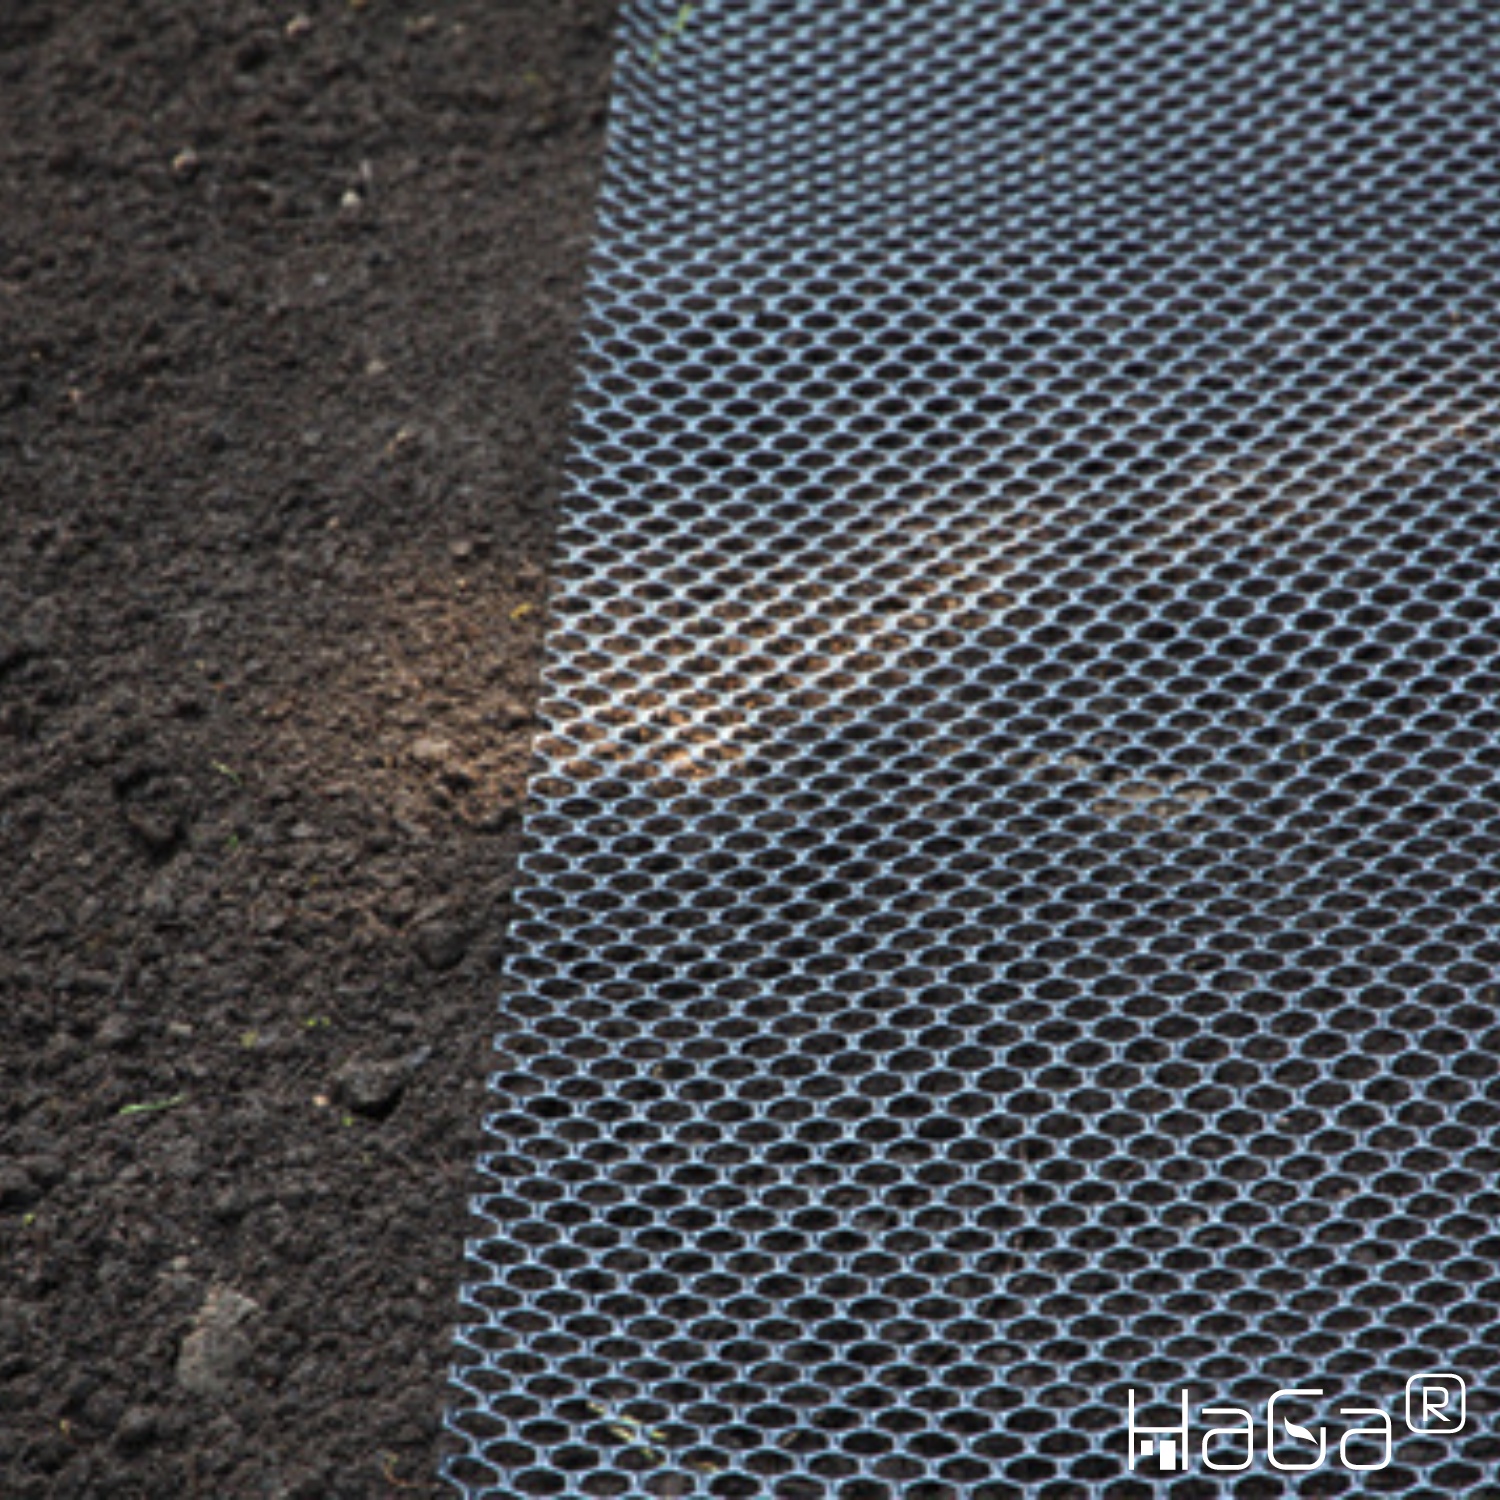 MAULWURFGITTER in 1,2 m di larghezza maglia 5mm (merce da cantiere) Barriera anti talpa